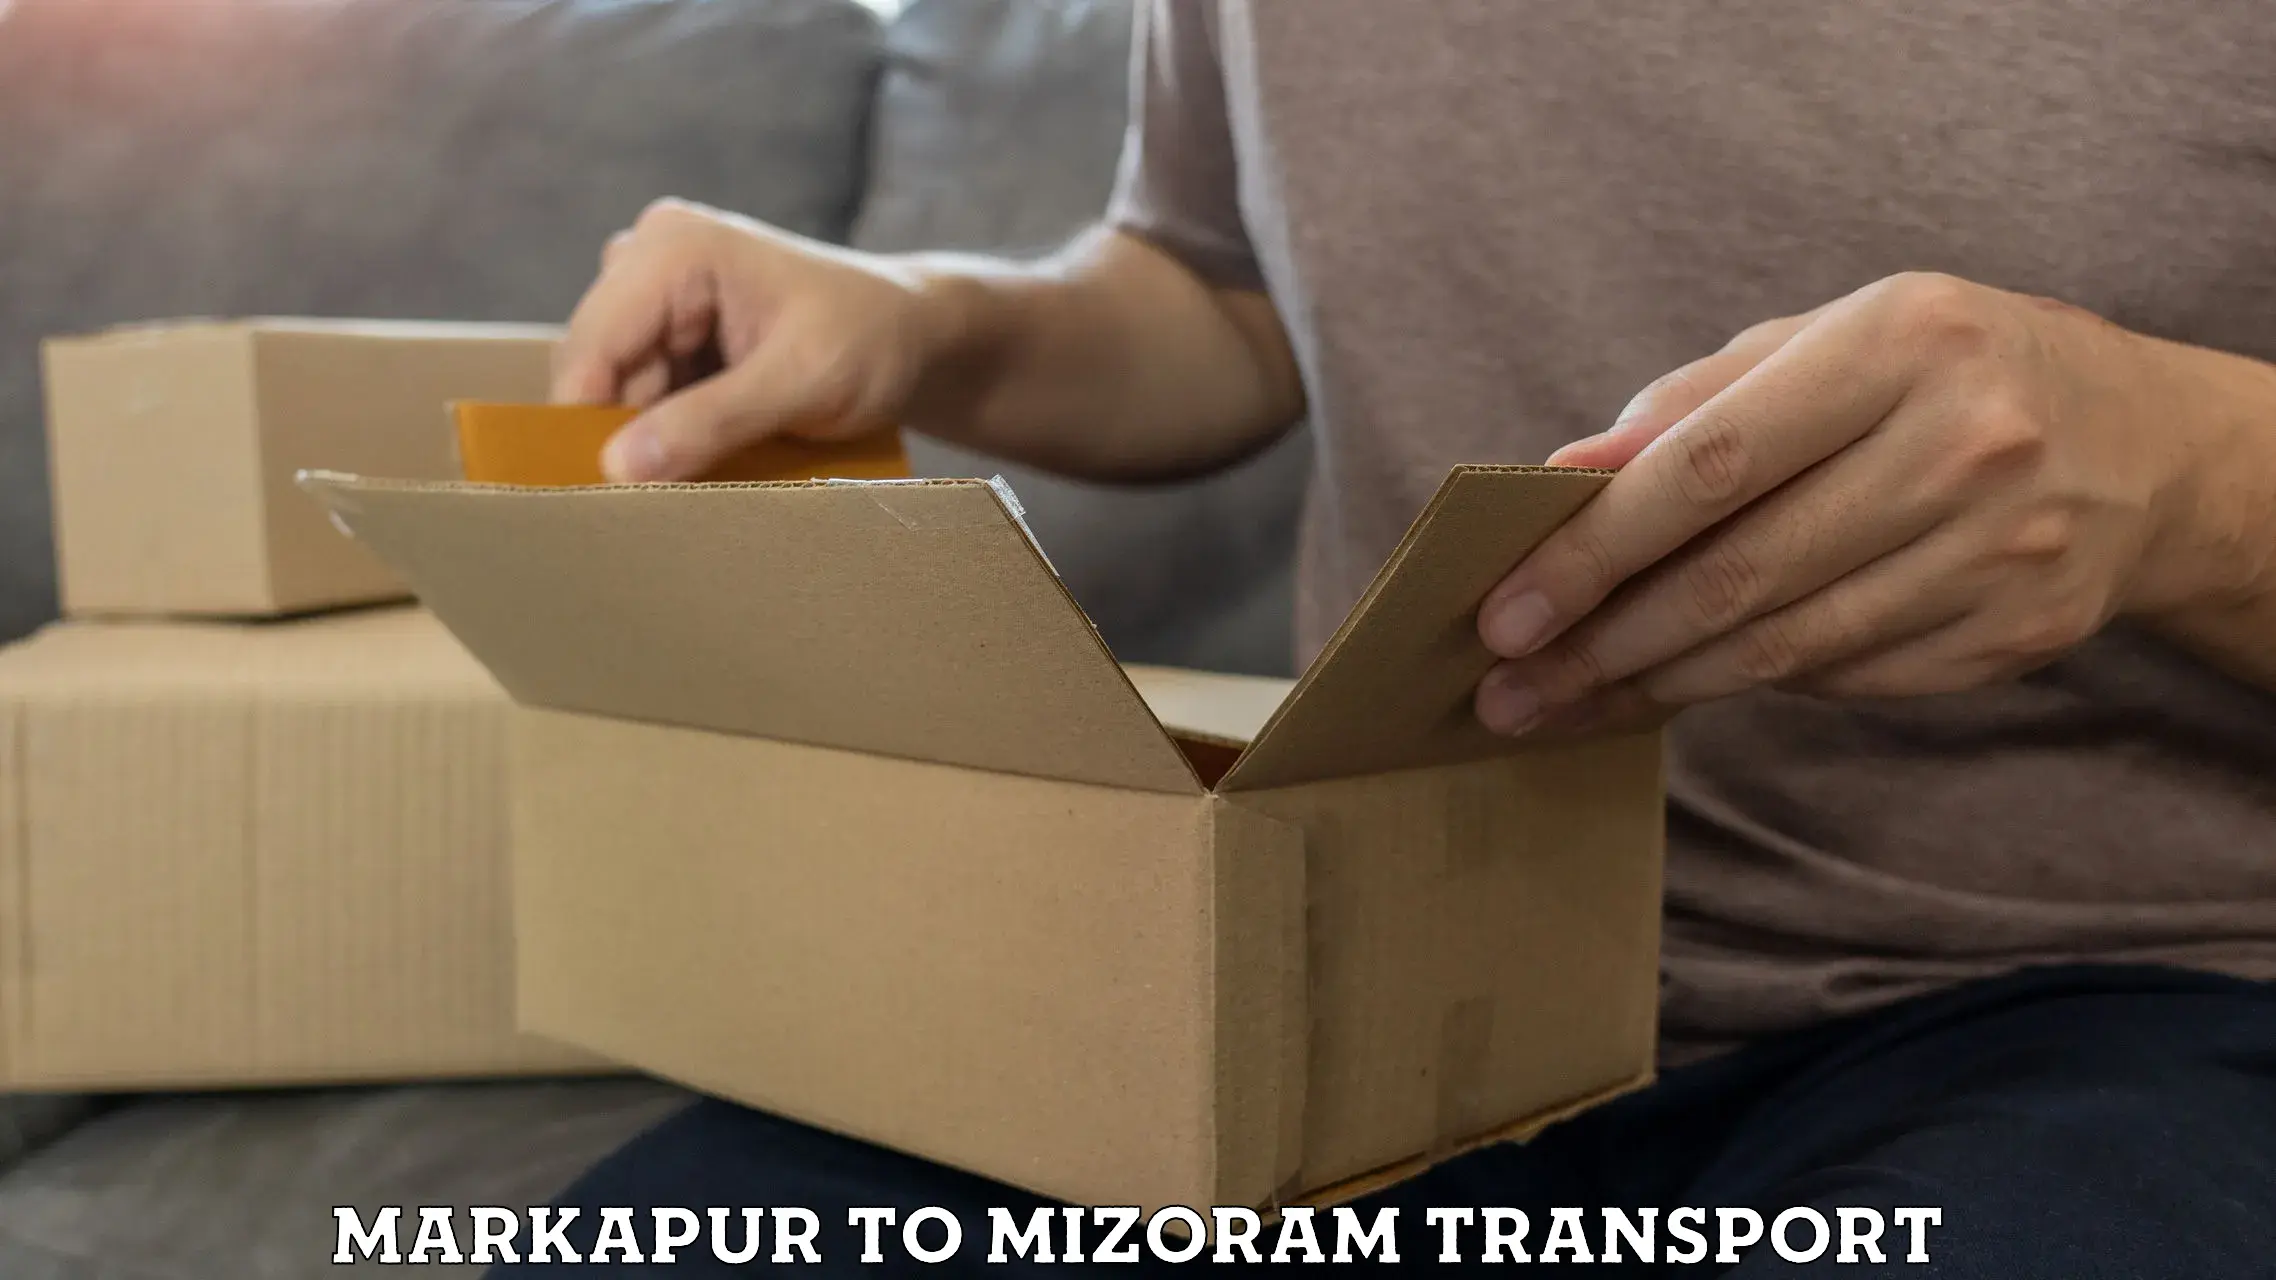 Nearest transport service Markapur to Mizoram